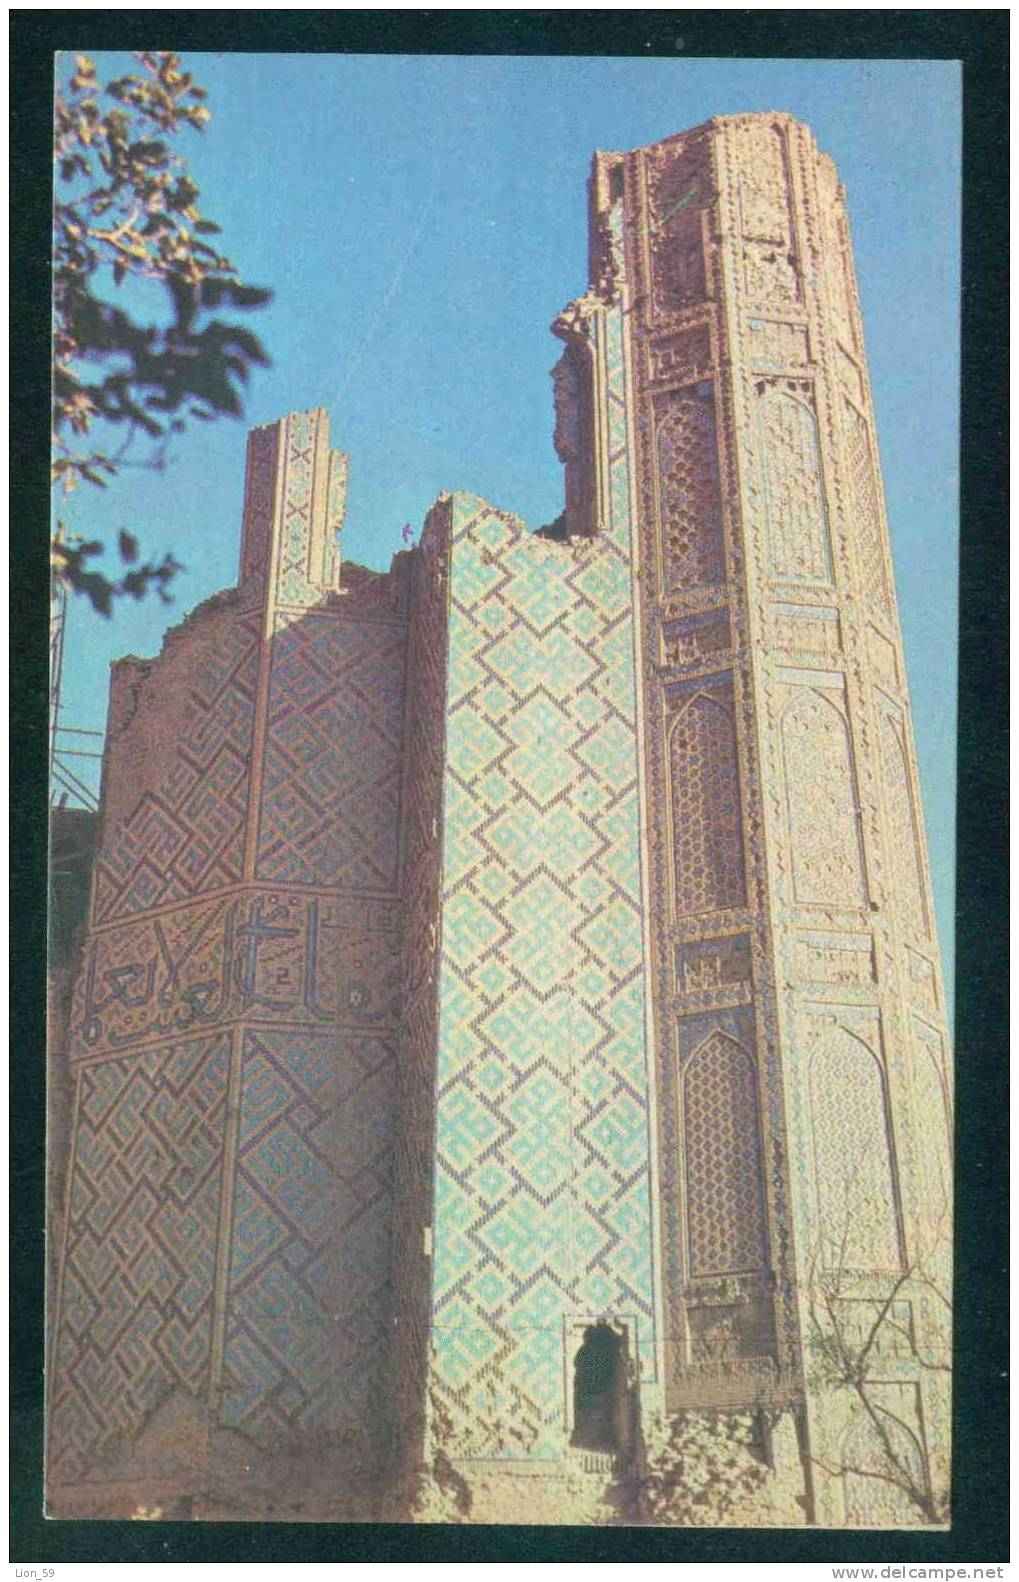 Samarkand / Samarcande - BIBIKHANYM / A FRAGMENT OF THE PORTAL / - Uzbekistan Ouzbékistan 108102 - Uzbekistán